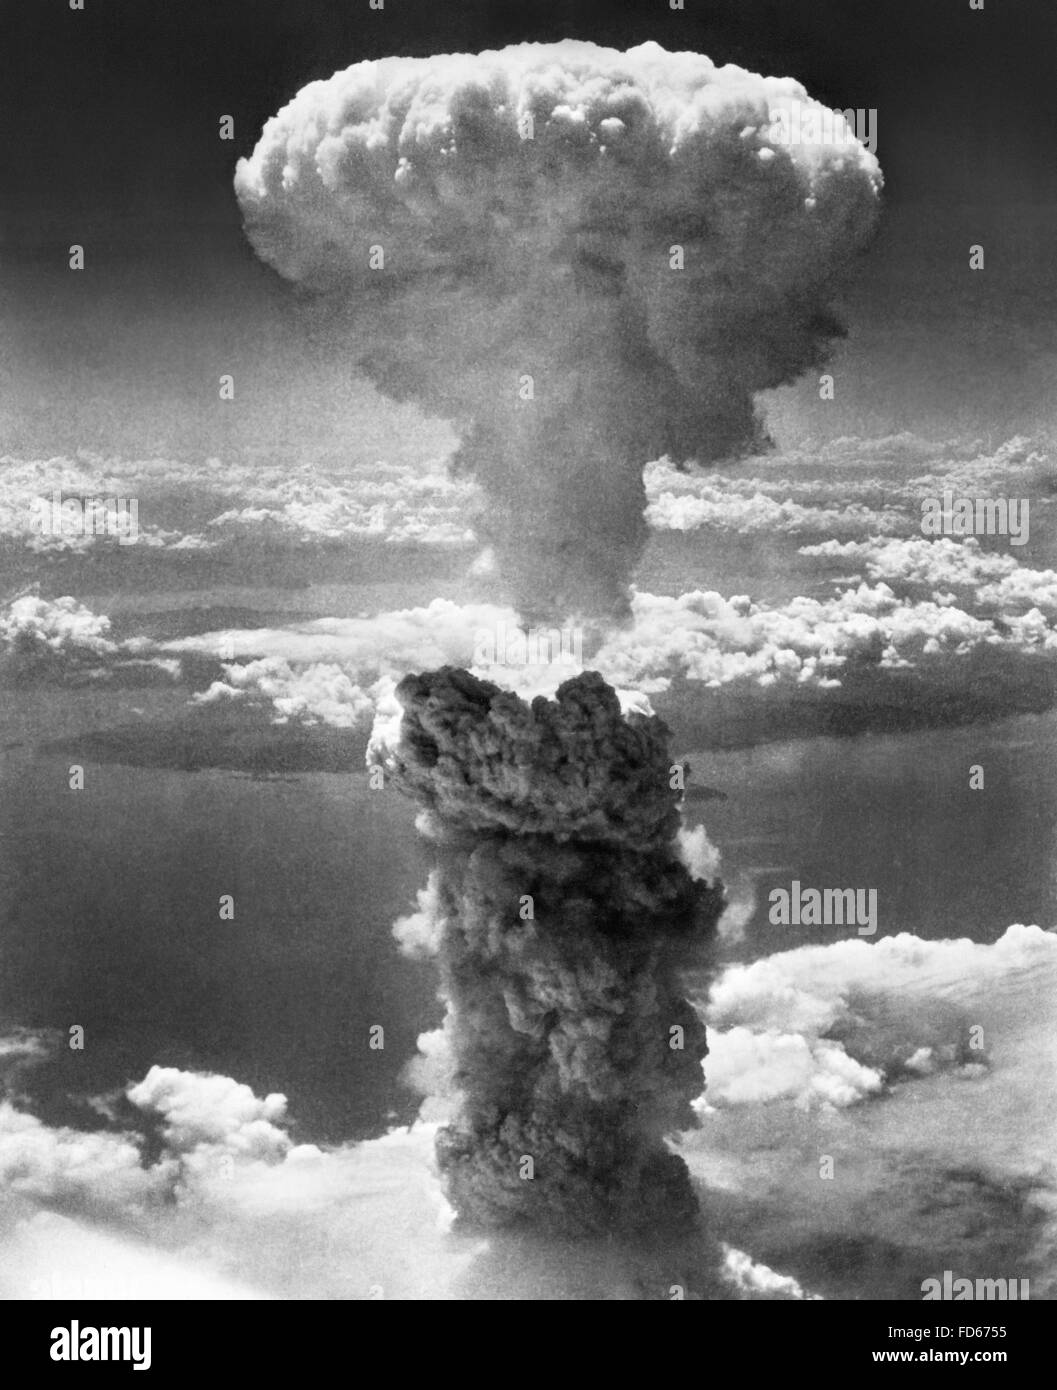 La Bomba atomica. La nube a fungo dalla seconda bomba atomica, "Fat Man', sceso a Nagasaki, in Giappone nella seconda guerra mondiale. Il 9 agosto 1945. Foto Stock